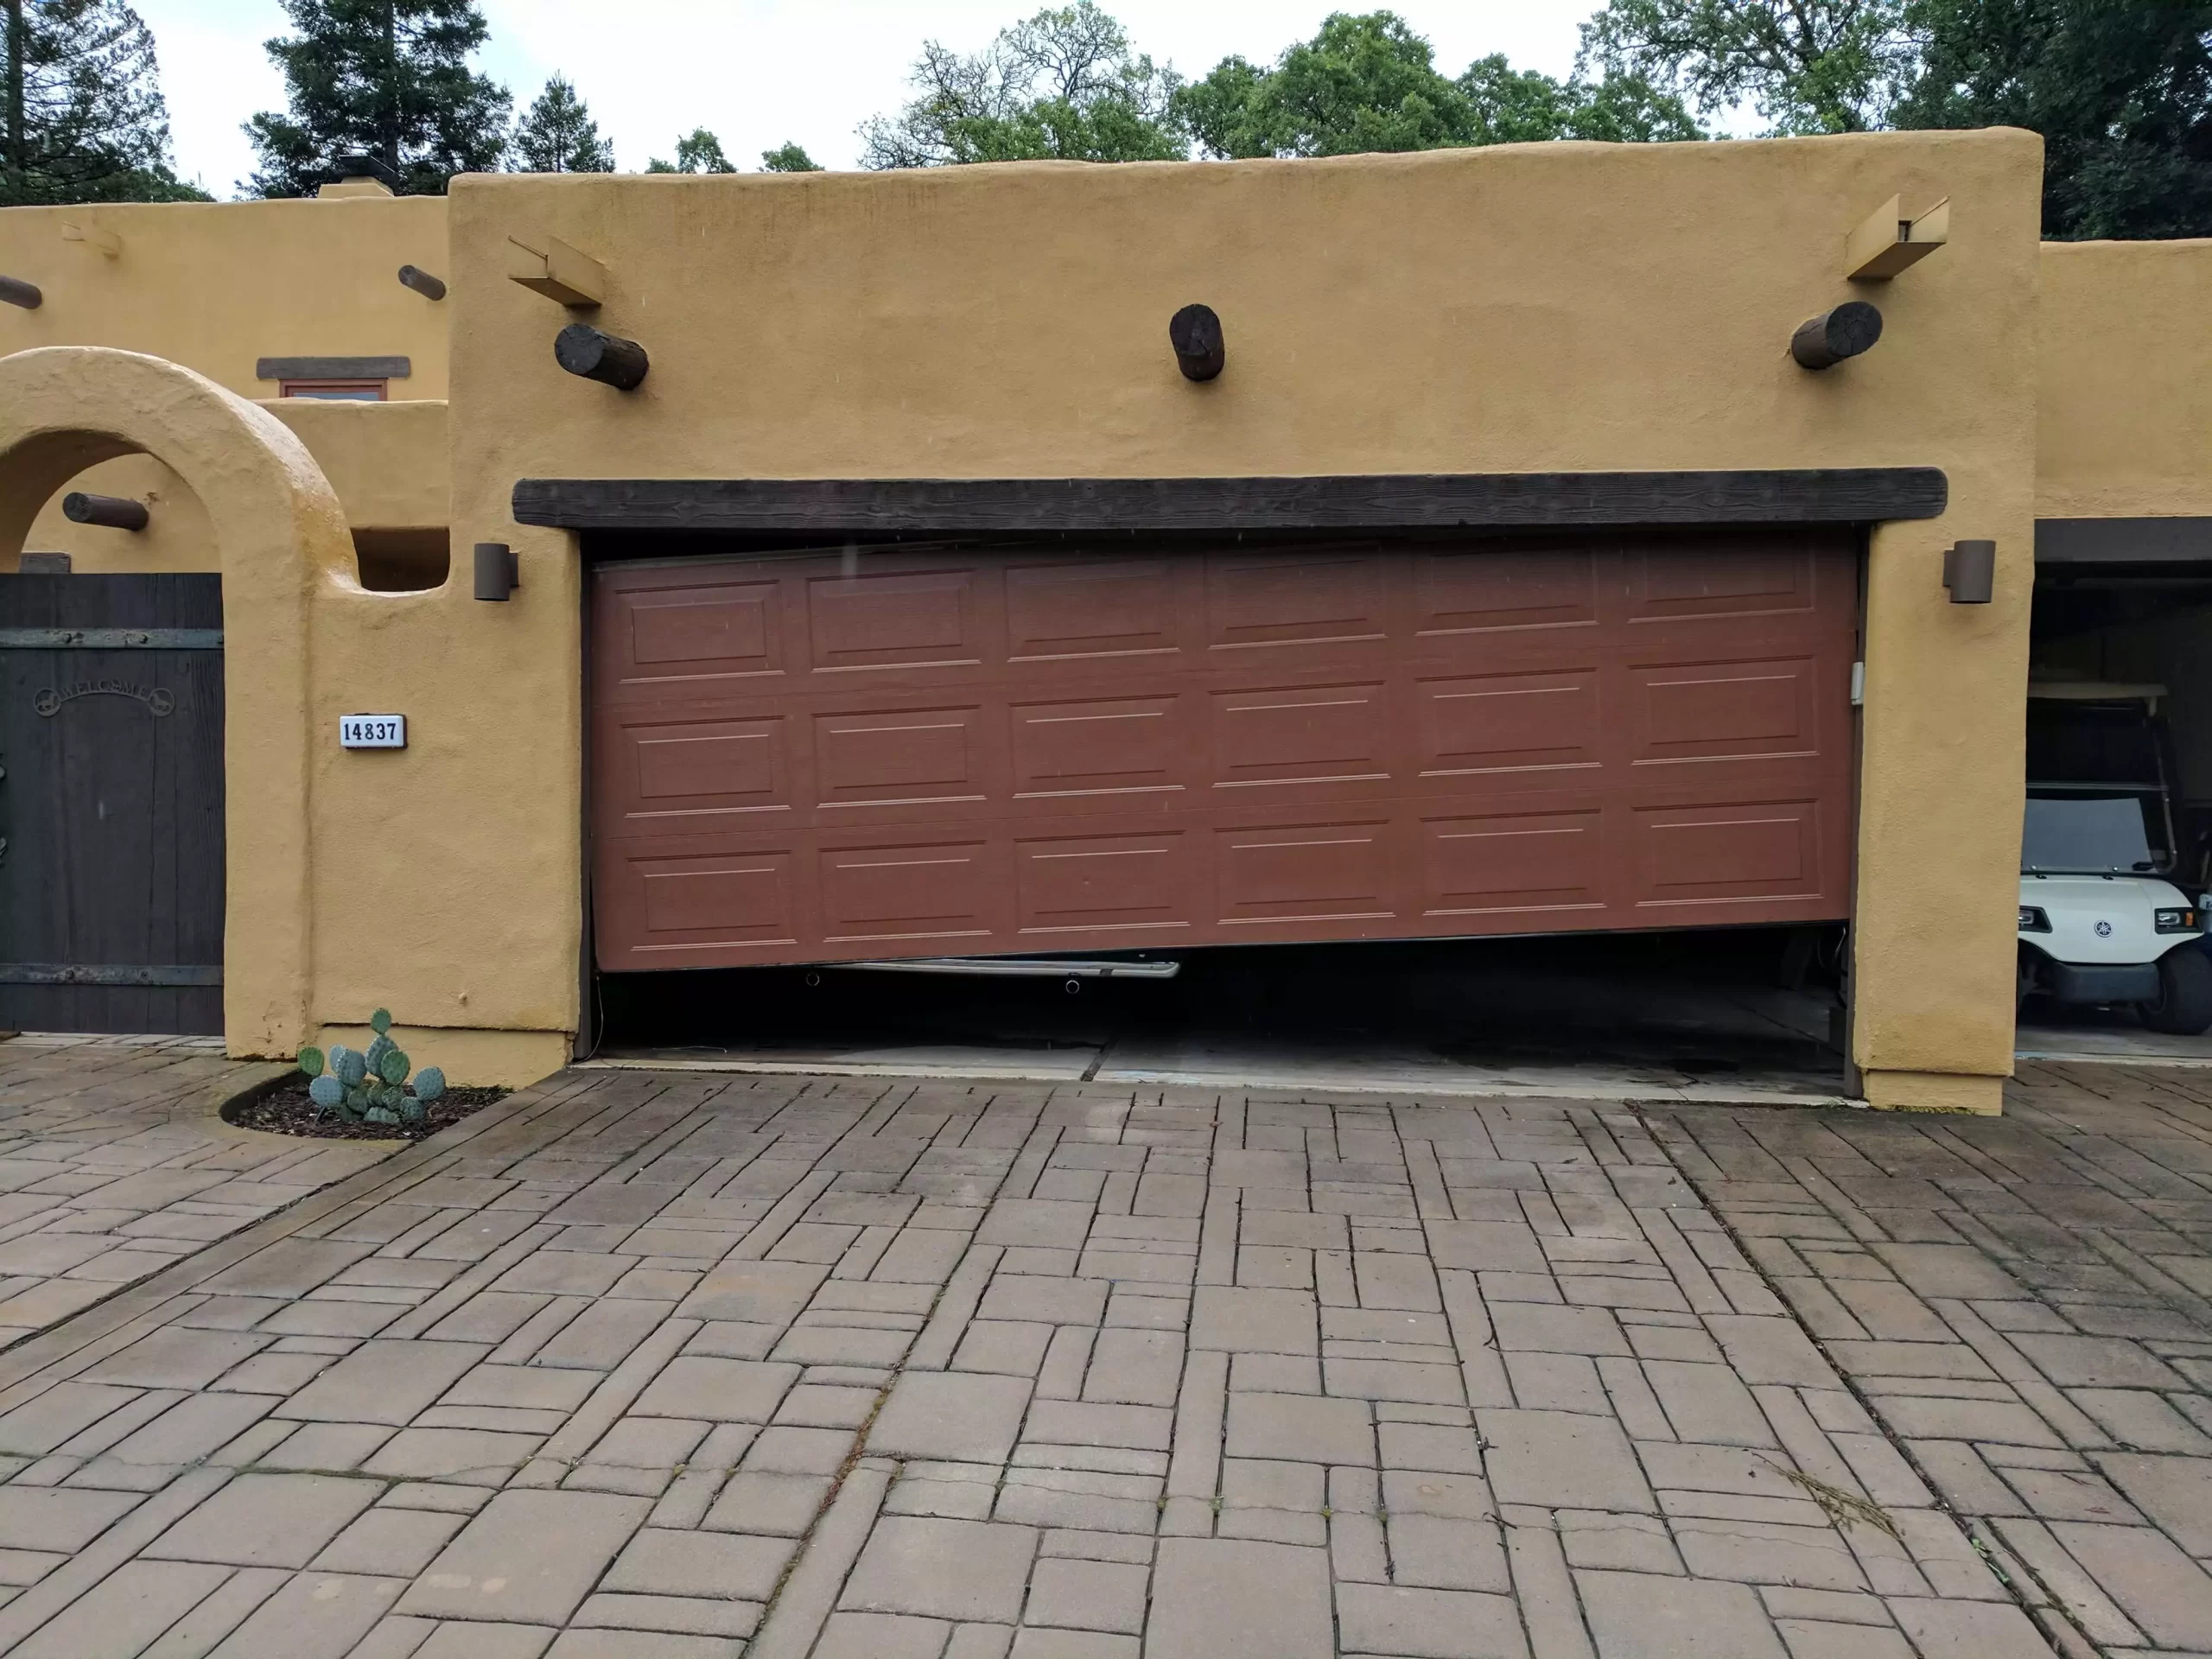 Garage-Door